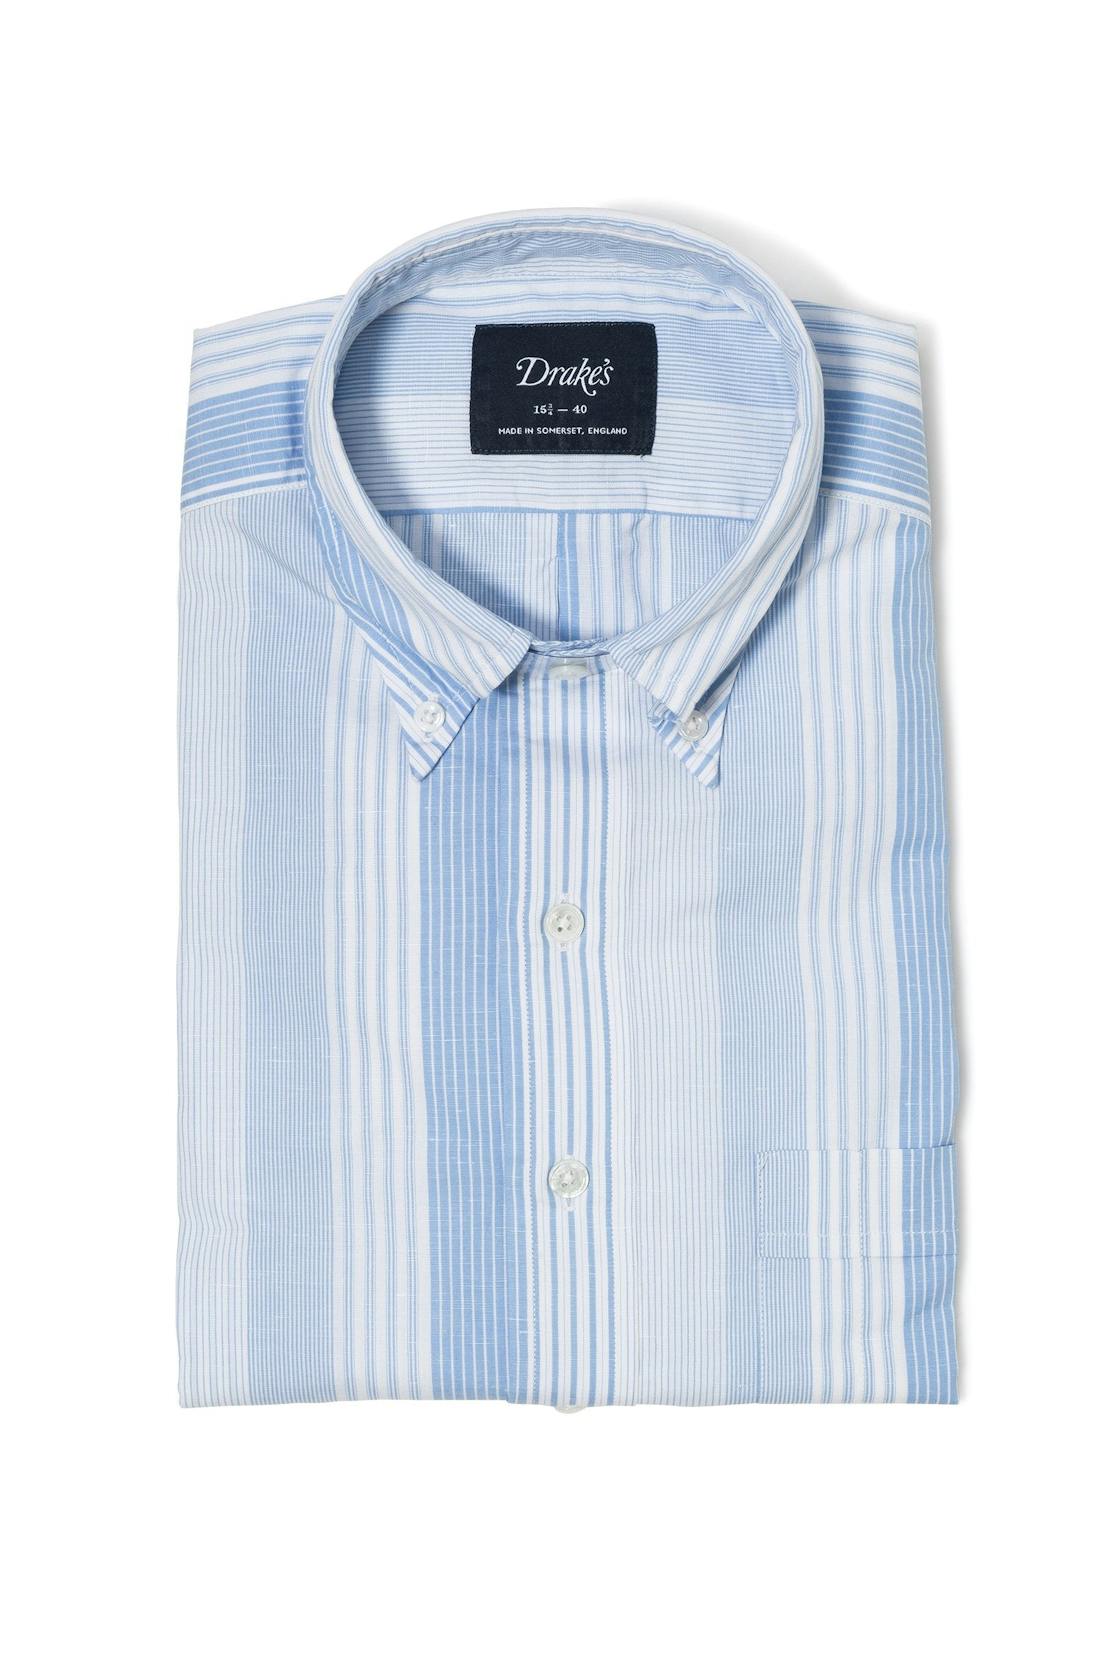 Drake's Blue/White Cotton/Linen Button Down Shirt